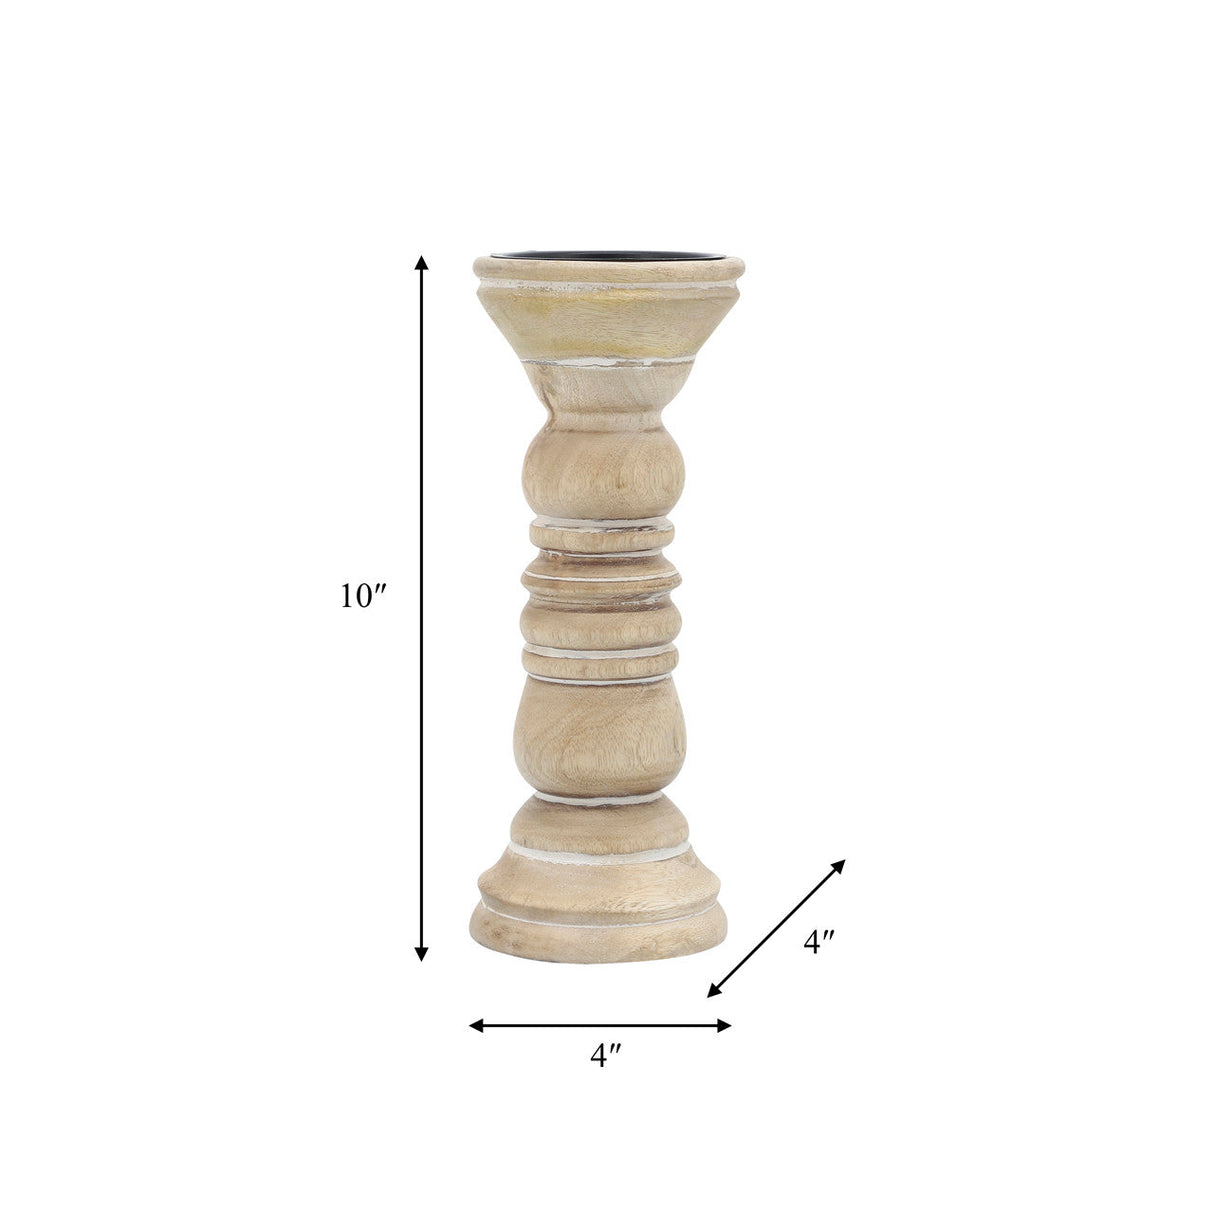 10" Wooden Pillar Holder, Natural